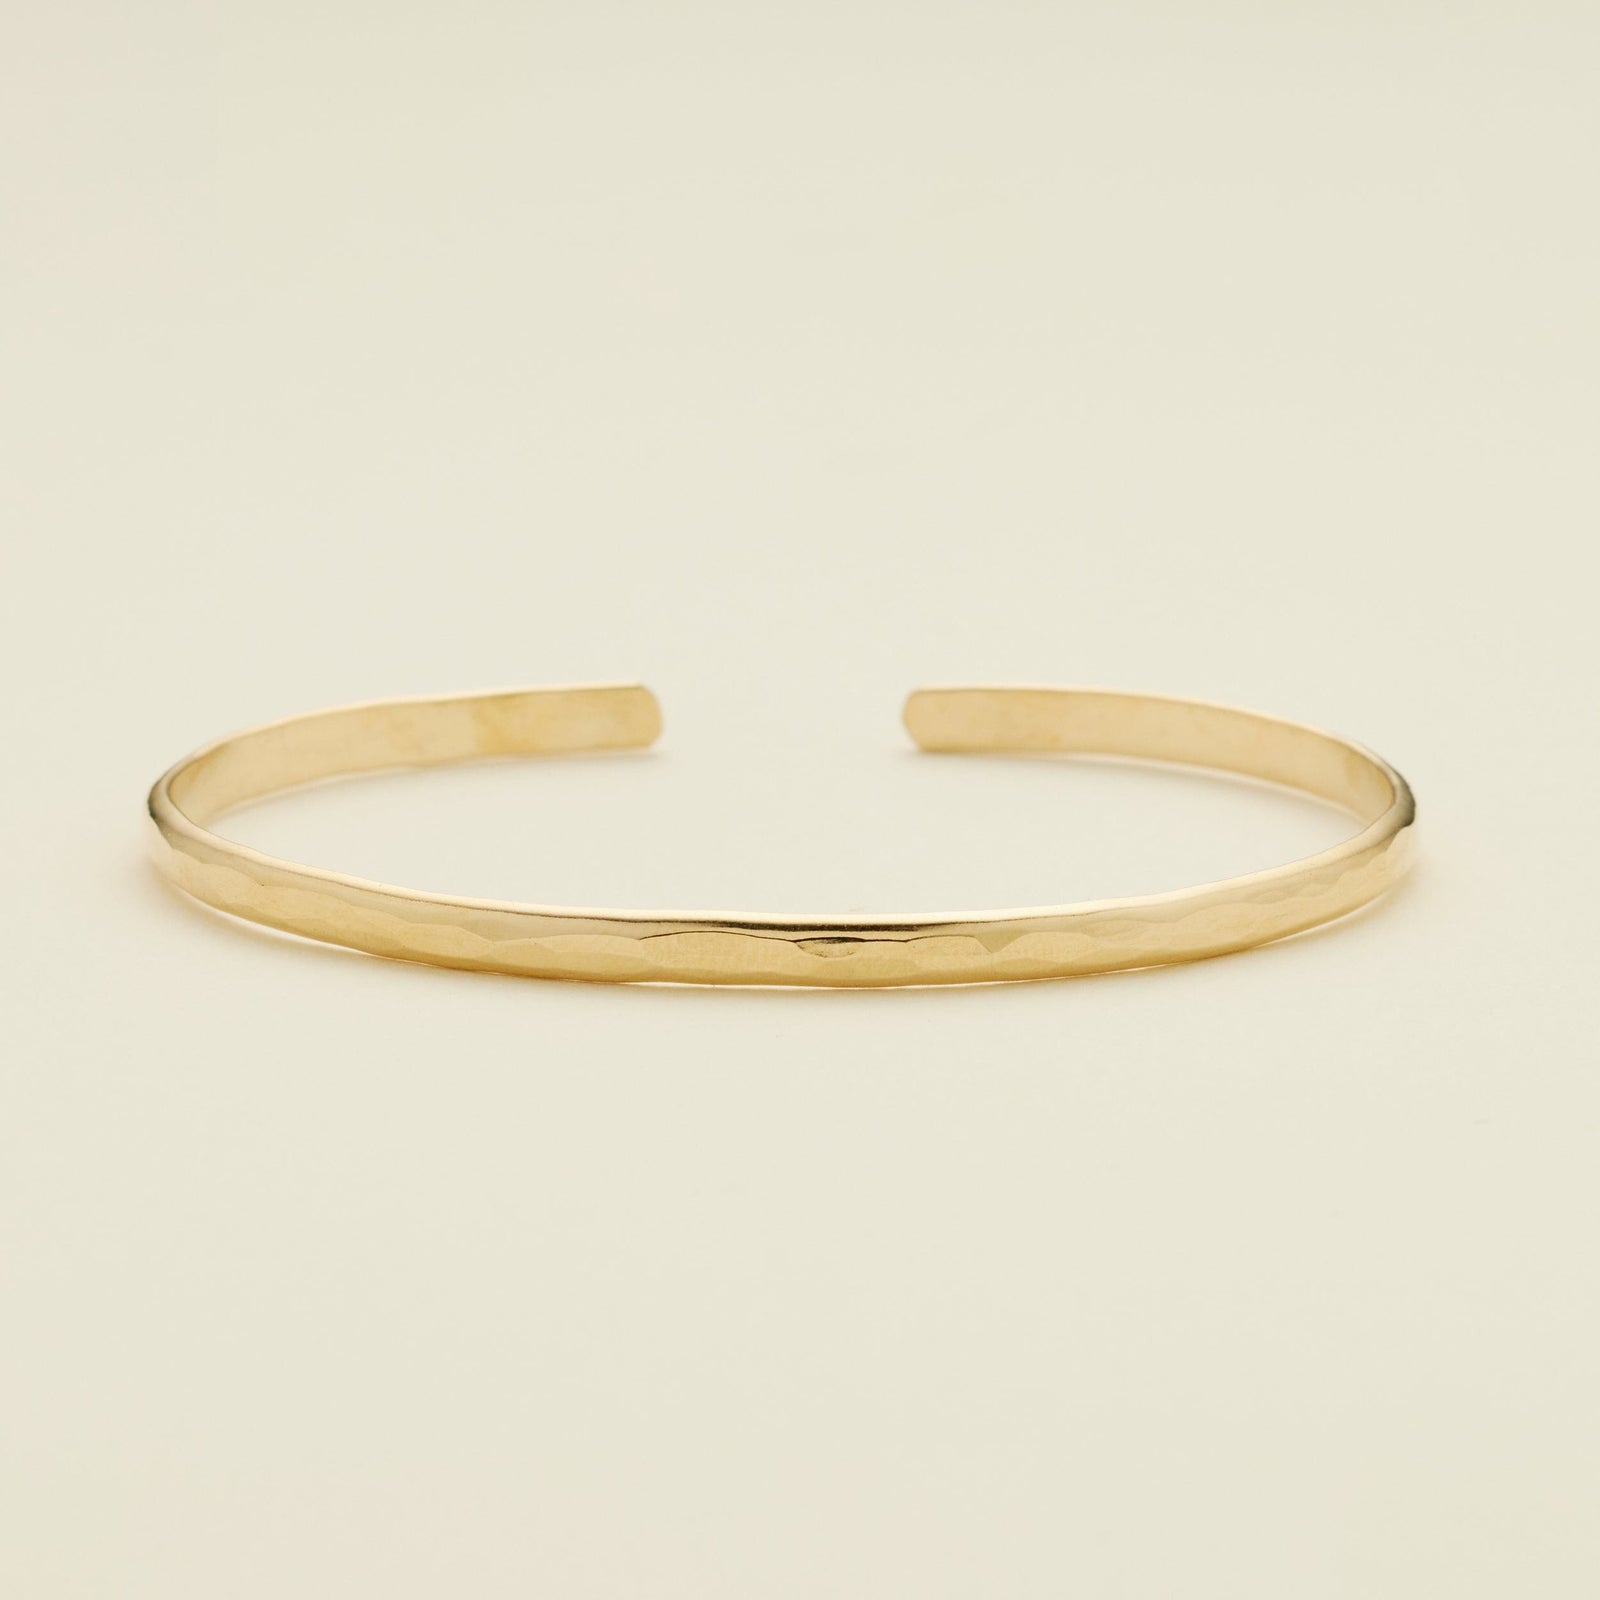 Hammered Cuff Bracelet Gold Filled / 6" Bracelet